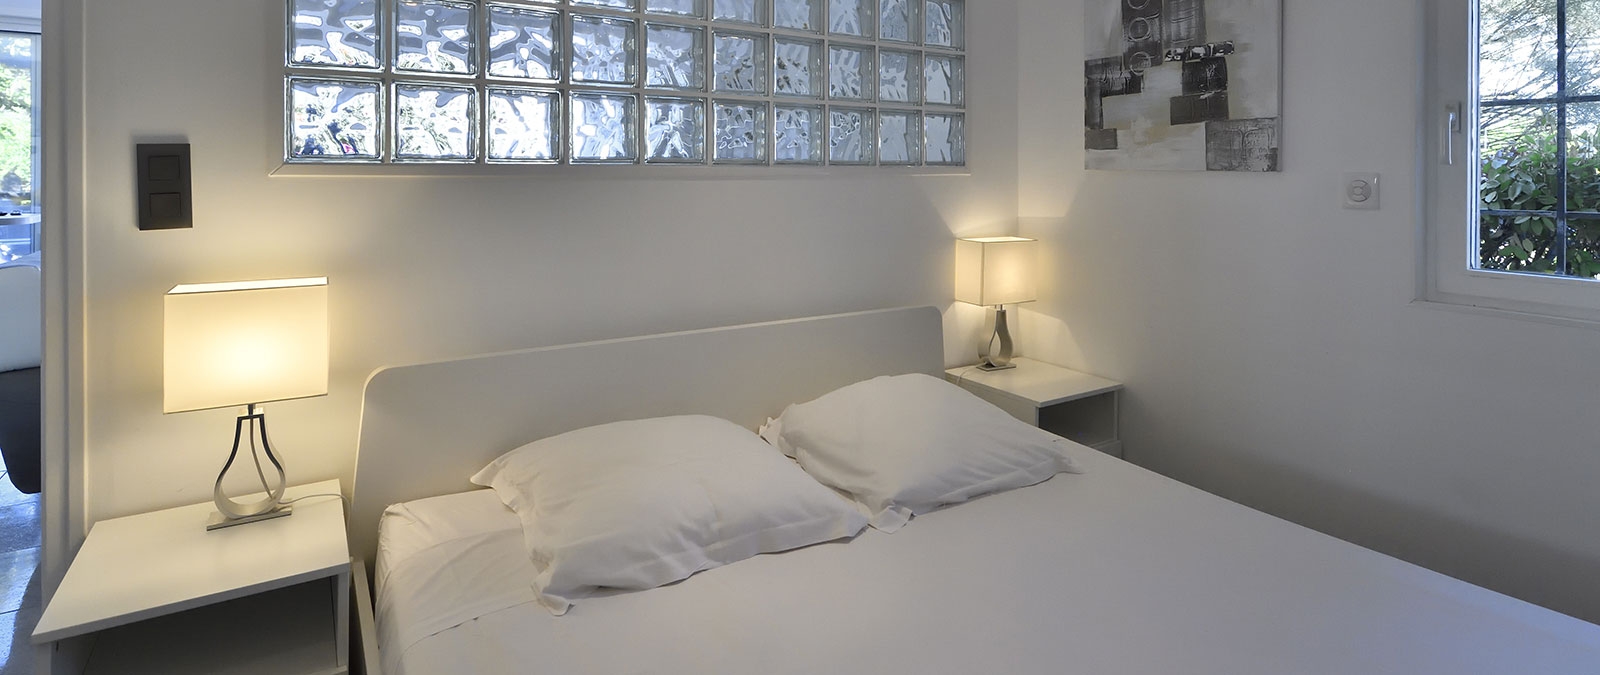 Dormitorio de villa libertina de Fifty shades con cama doble